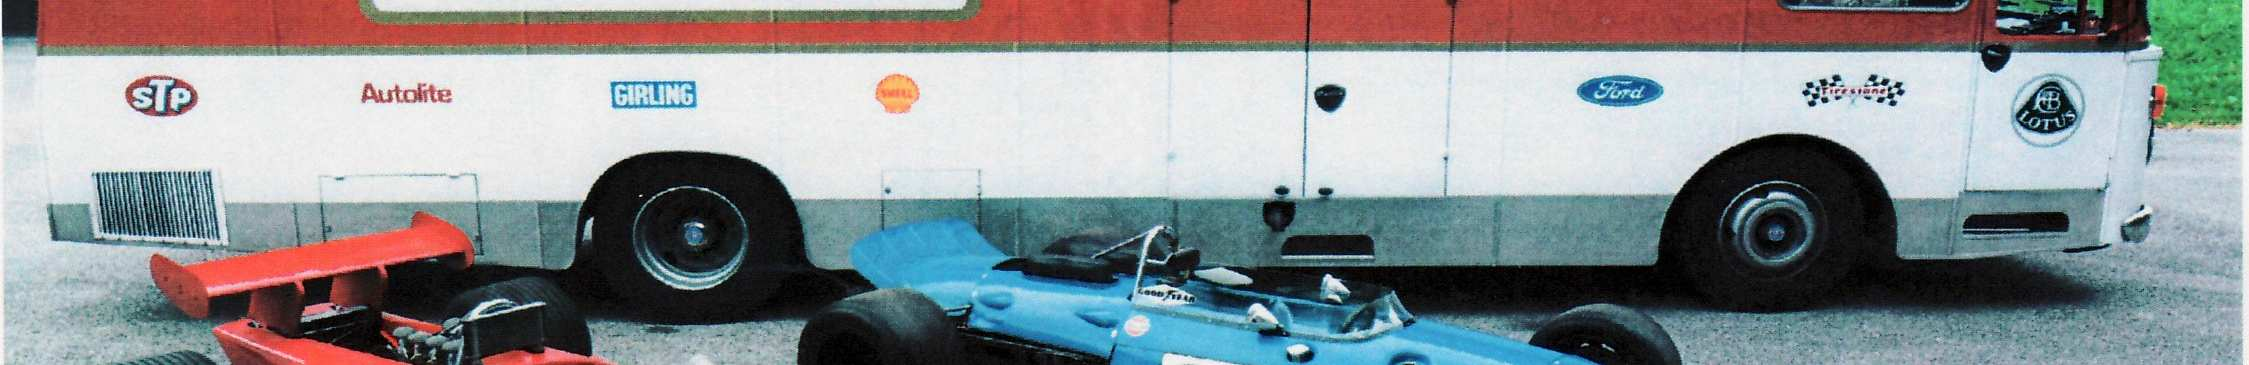 Am Steuer des Lotus 49, mit dem Jochen Rindt 1970 in Monaco triumphieren konnte, wird von Franz-Josef Schwarz, Formel 1 Techniker aus Bayern, sitzen.